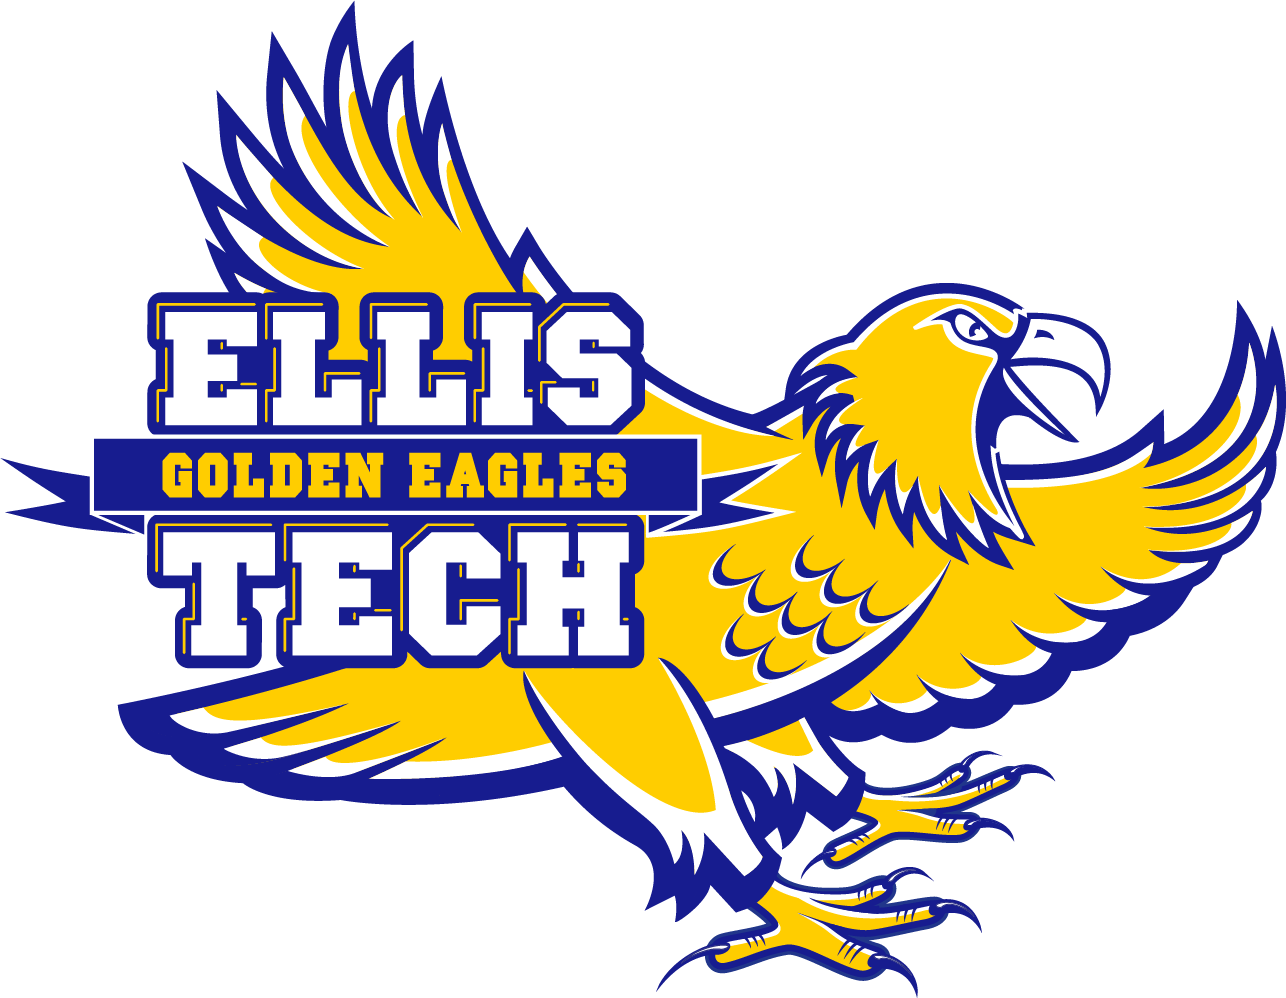 Ellis Tech logo